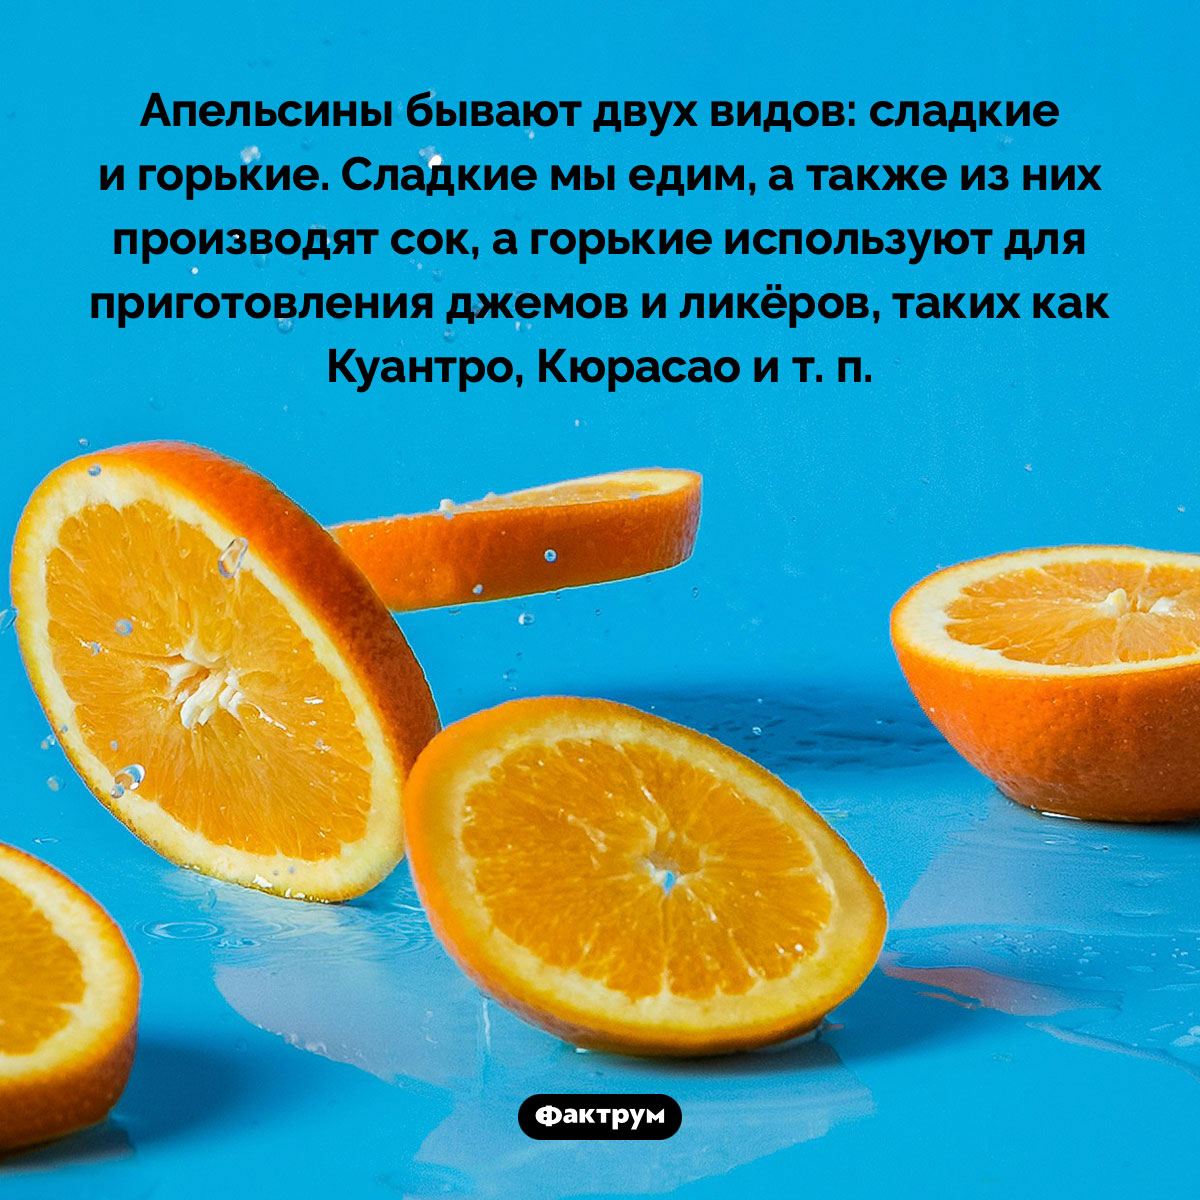 Горькие сорта апельсинов. Апельсины бывают двух видов: сладкие и горькие. Сладкие мы едим, а также из них производят сок, а горькие используют для приготовления джемов и ликёров, таких как Куантро, Кюрасао и т. п.